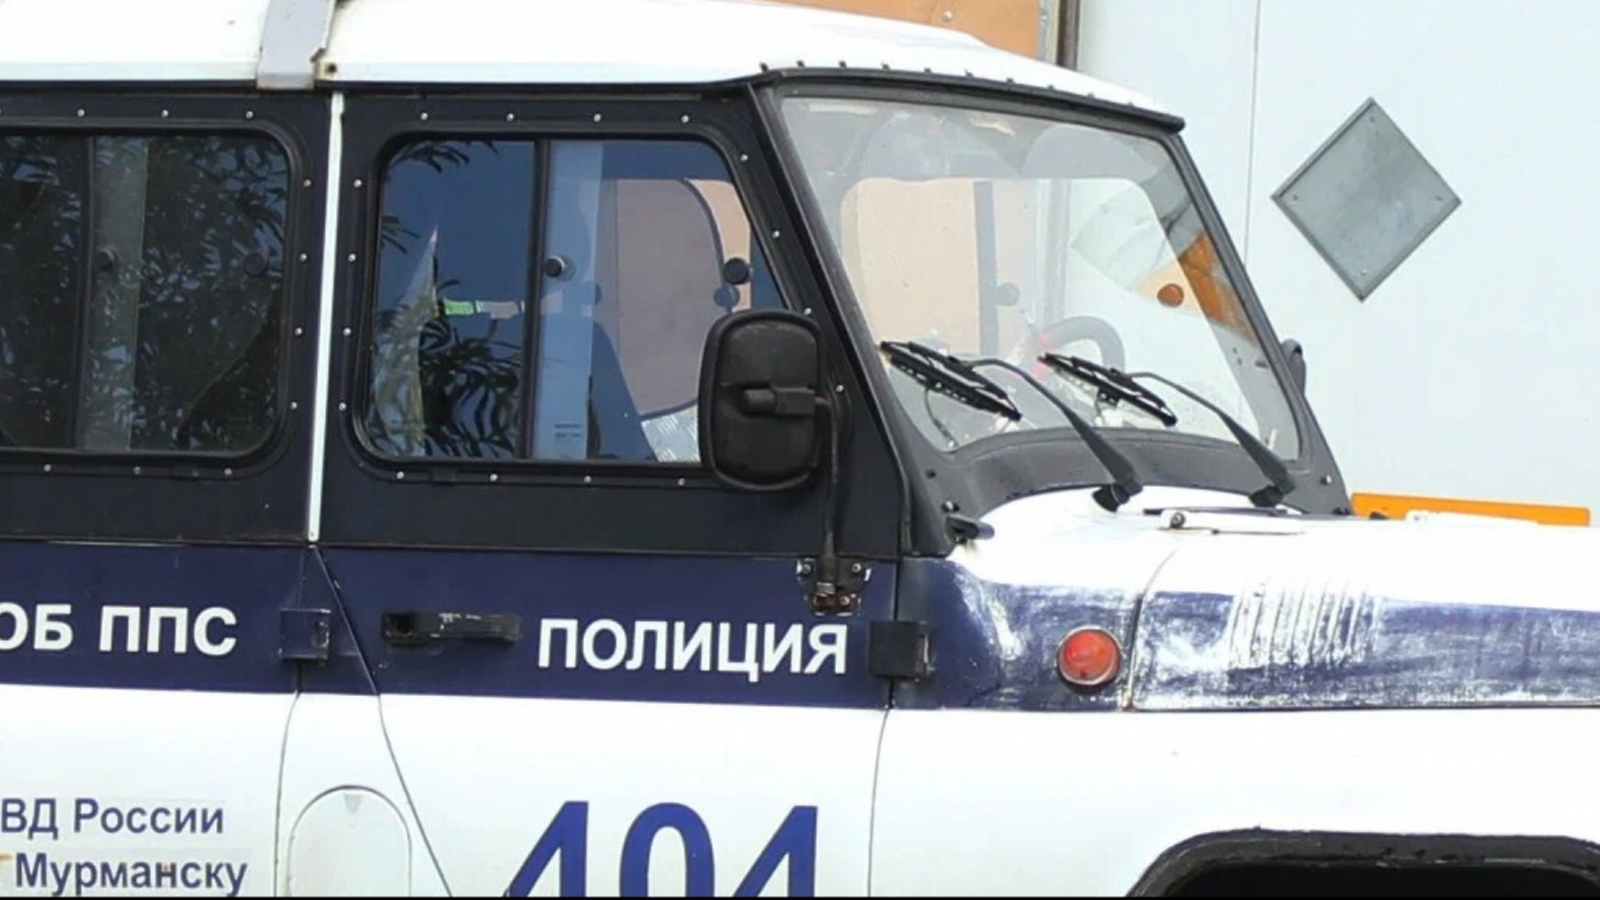 Северянин угнал авто в Оленегорске и продал его в Мурманске